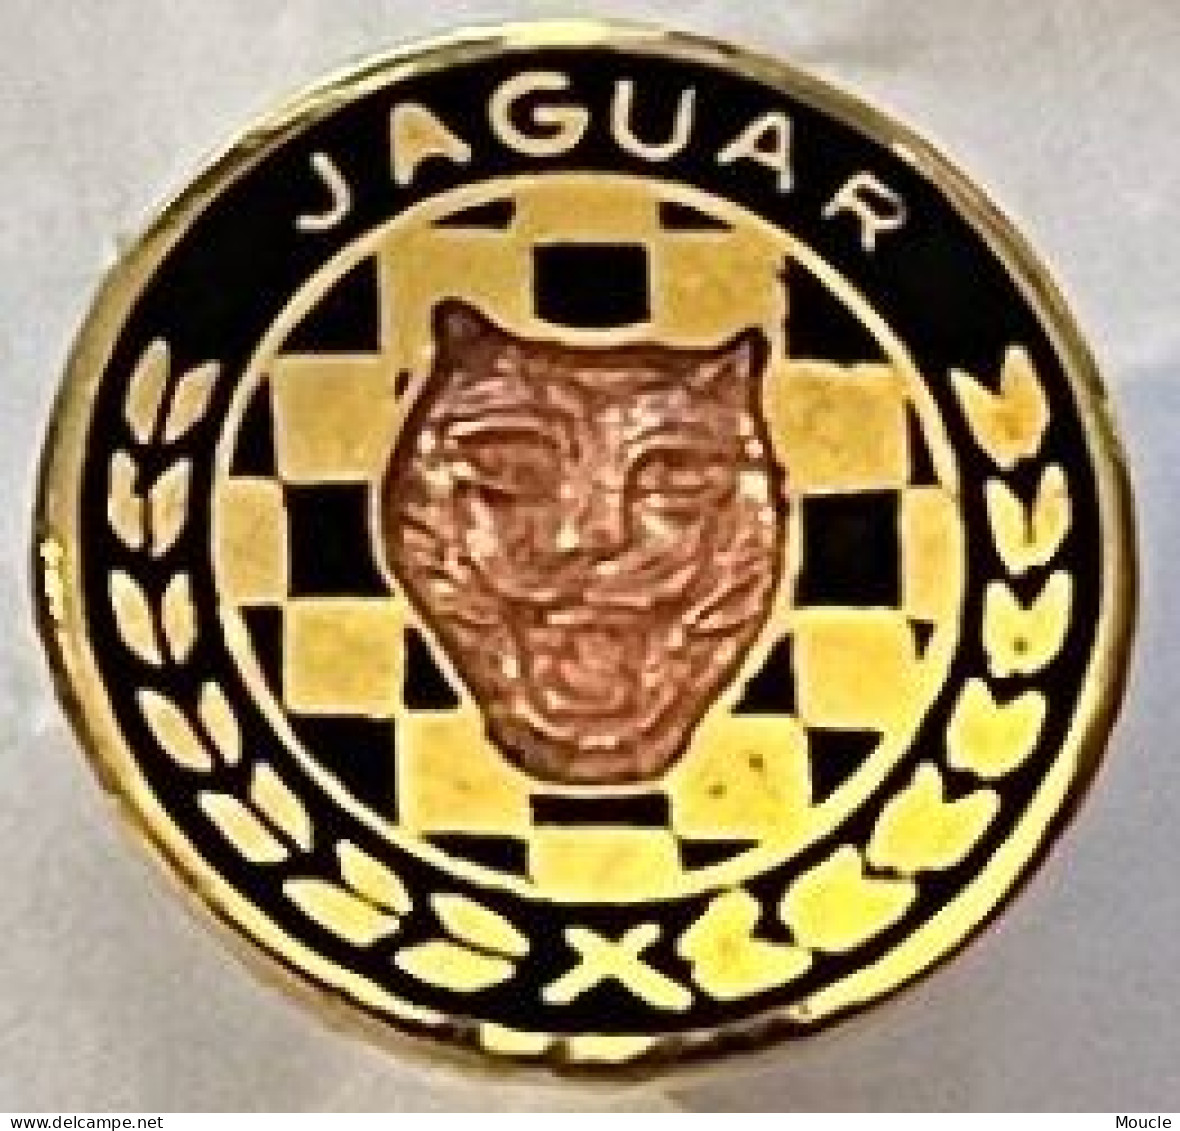 LOGO JAGUAR - VOITURE - CAR - PETIT ROND (1cm) - AUTOMOBILE - AUTO -  (32) - Jaguar